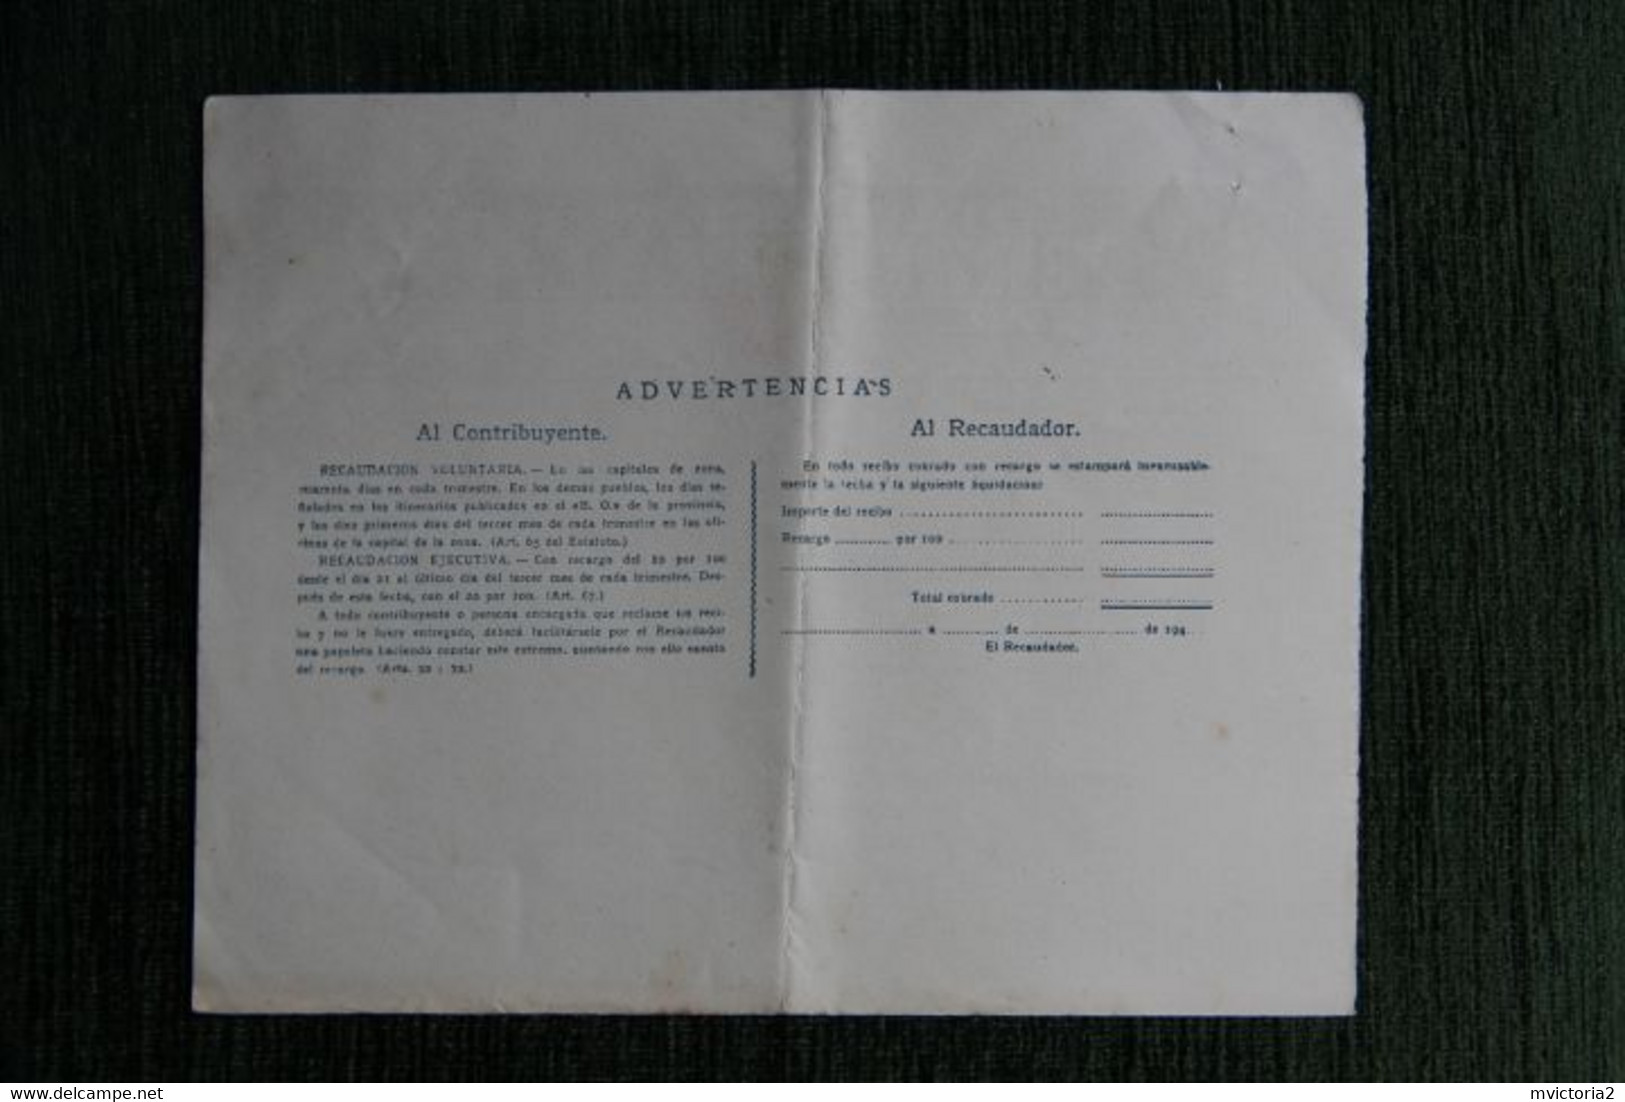 ESPAGNE : Contribucion Territorial 1949 - Spanien